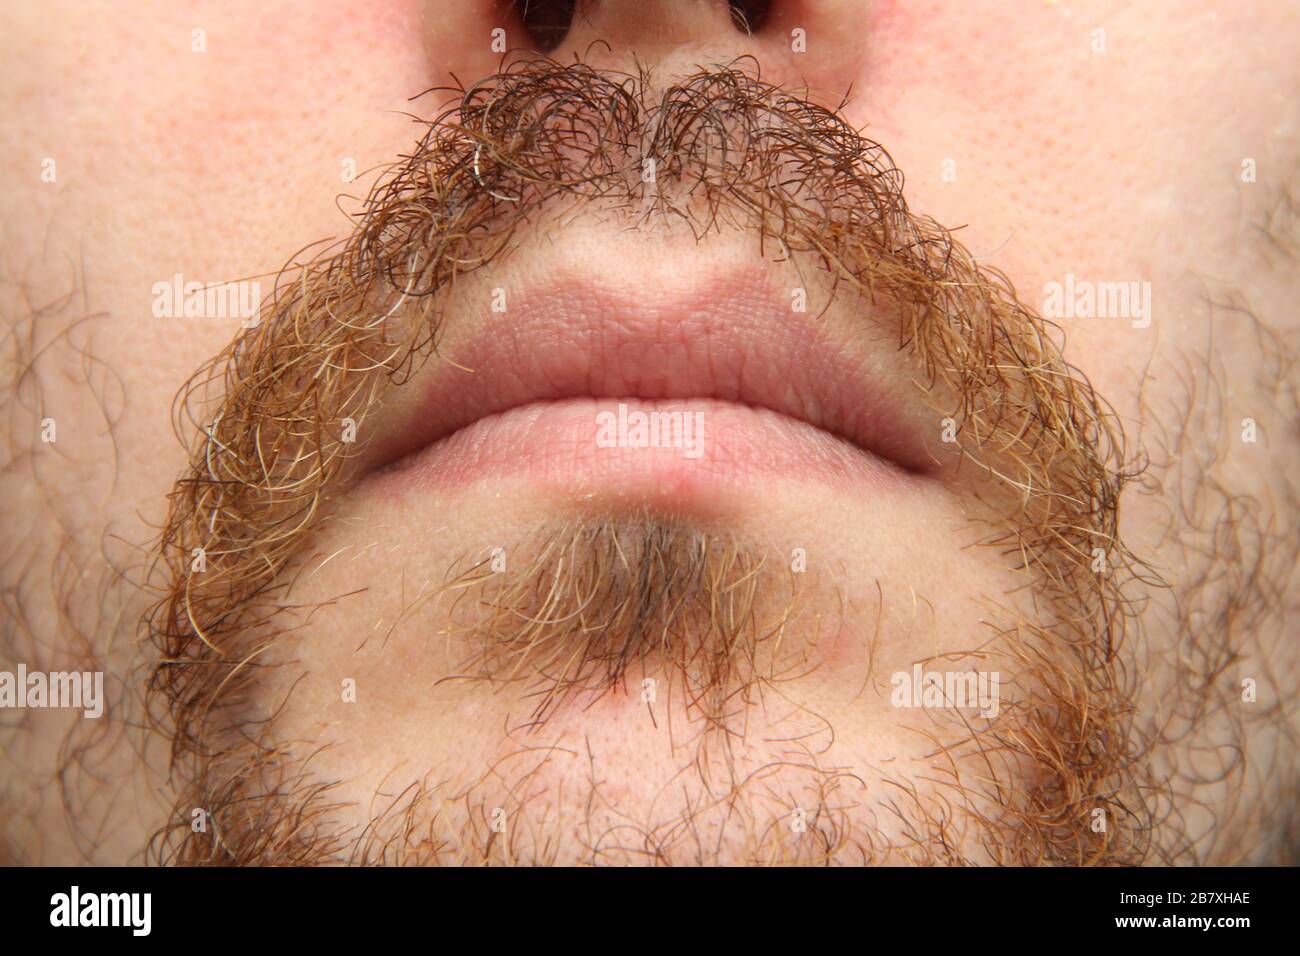 La parte inferior de la cara de un hombre blanco con barba y bigote. Foto de stock